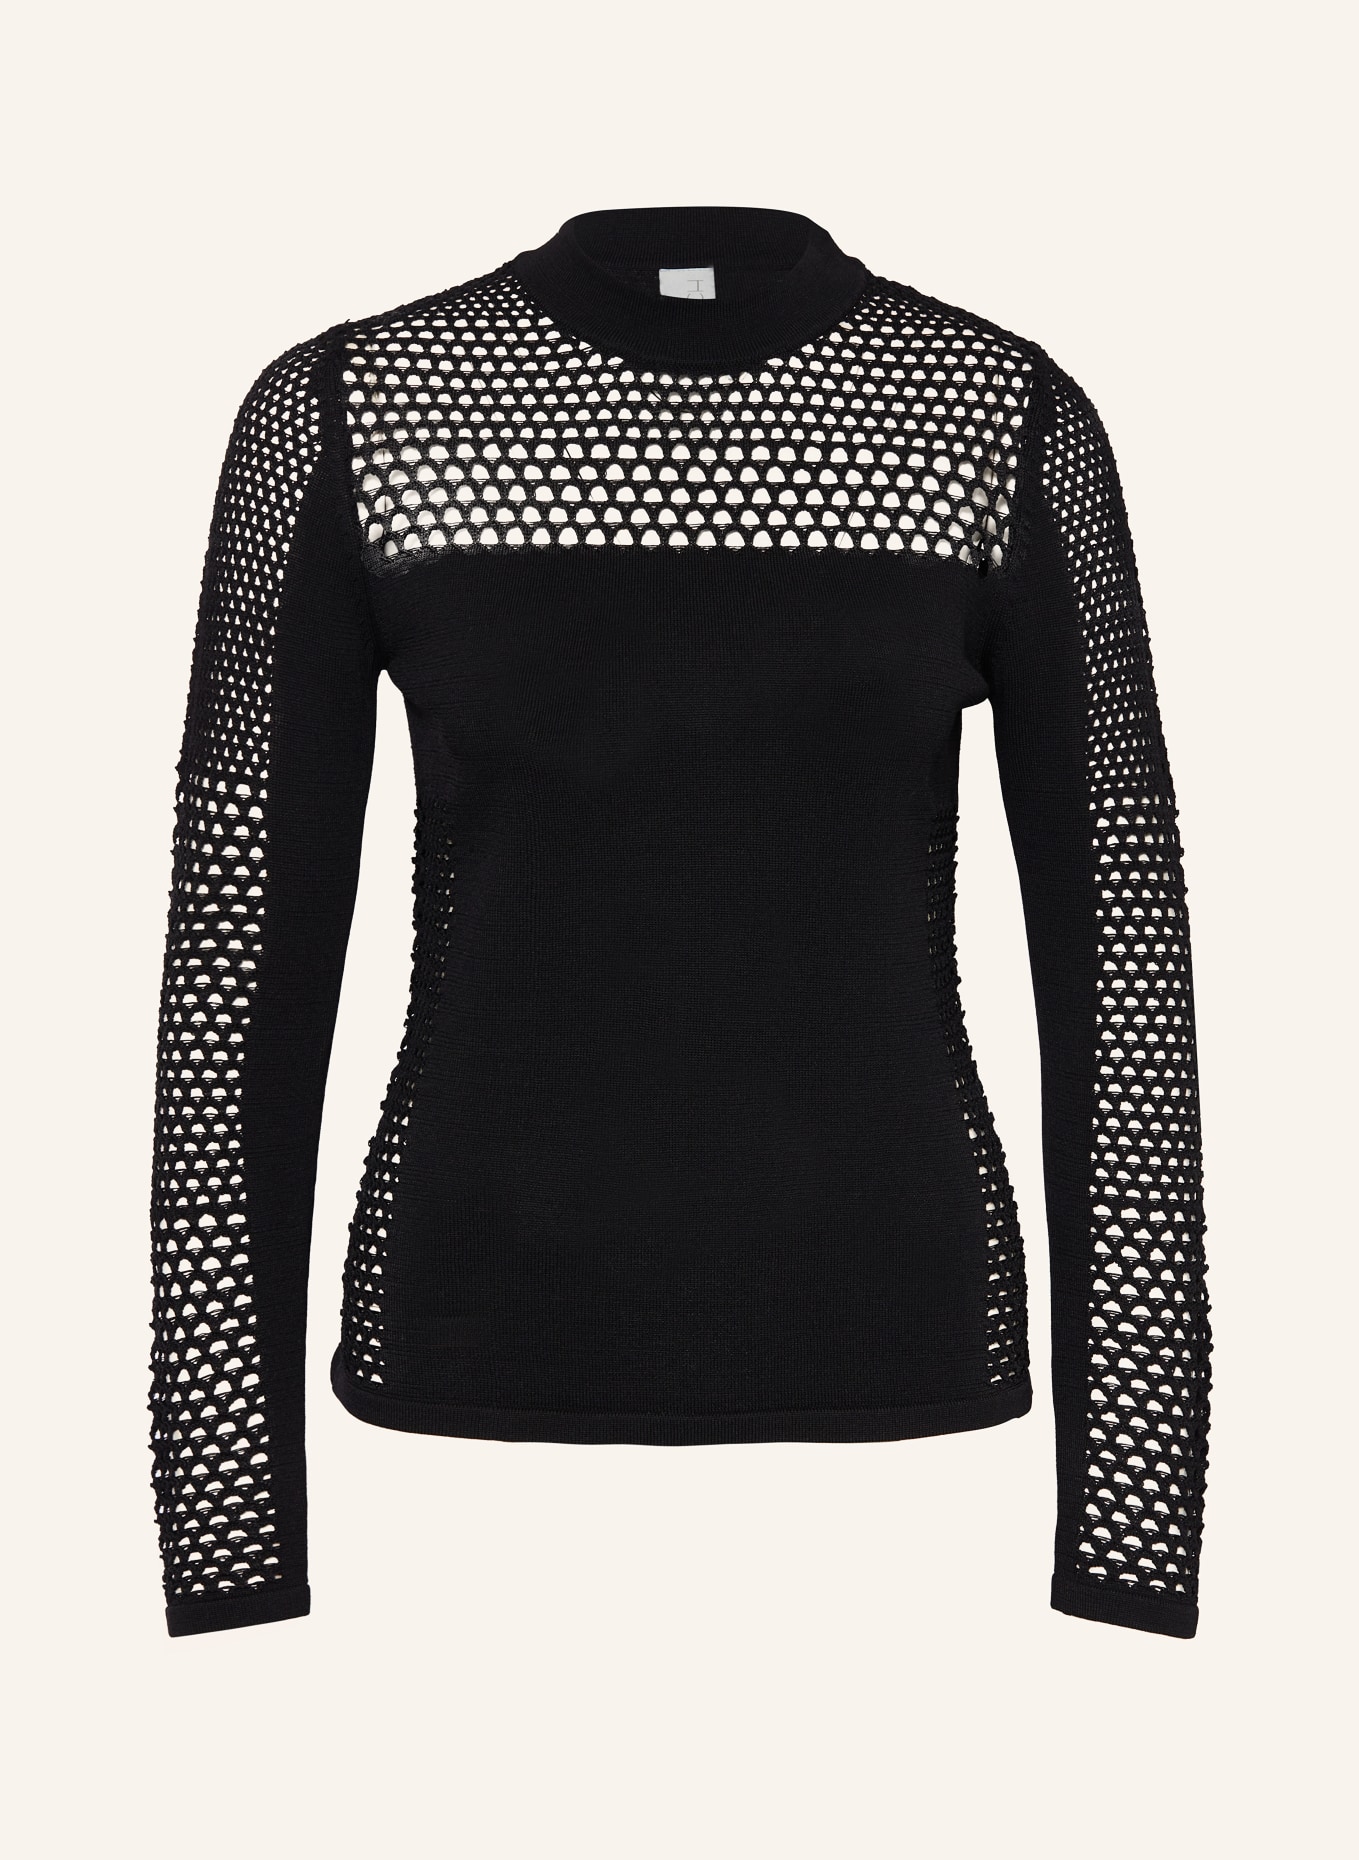 ULLI EHRLICH SPORTALM Sweater, Color: BLACK (Image 1)